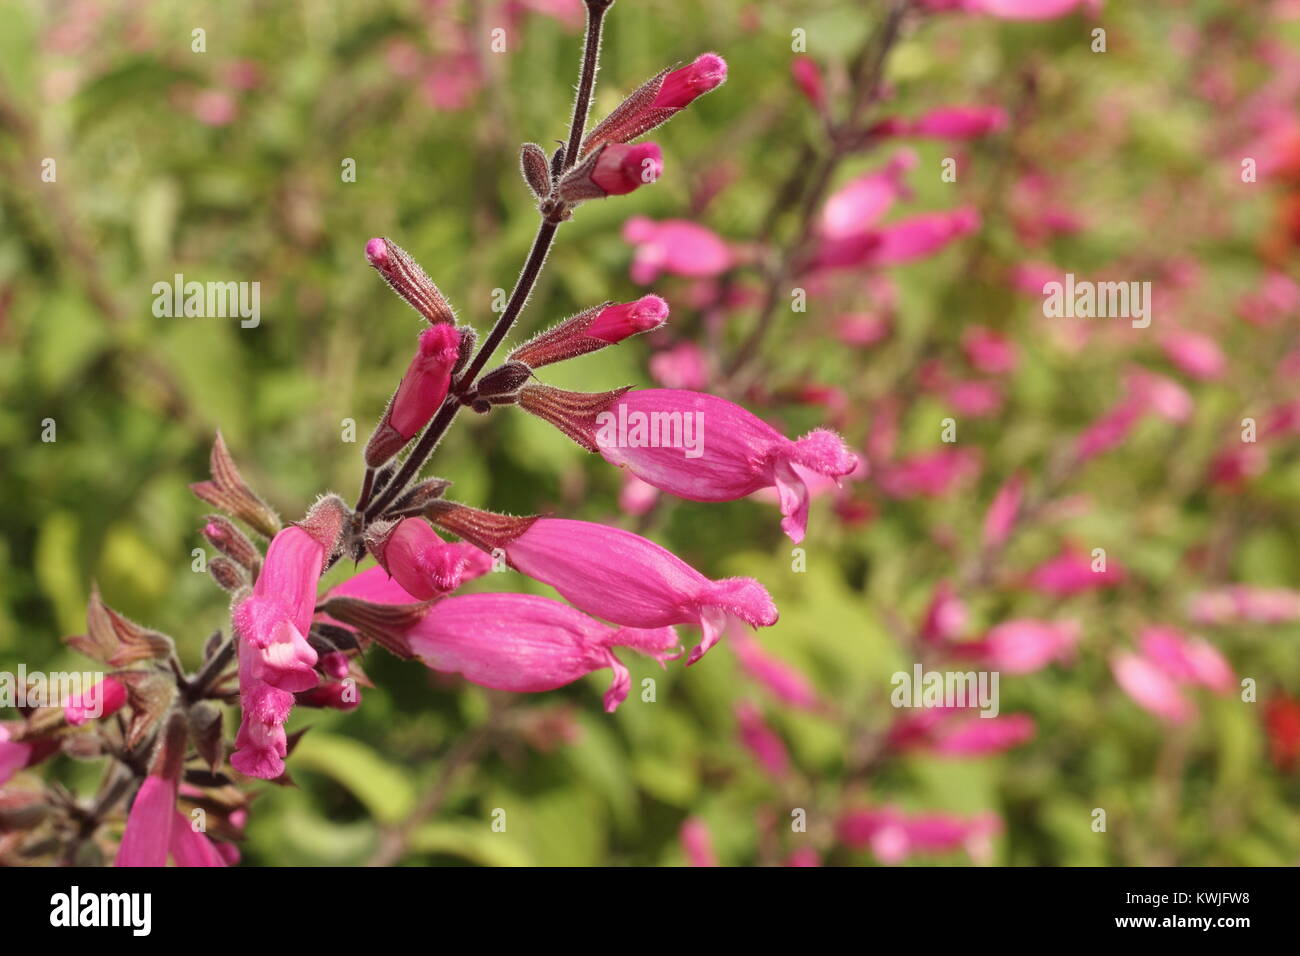 Salvia involucrata" Bethellii", auch genannt Roseleaf Salbei, in der Blume in einem späten Sommer Garten Grenze - September, Großbritannien Stockfoto